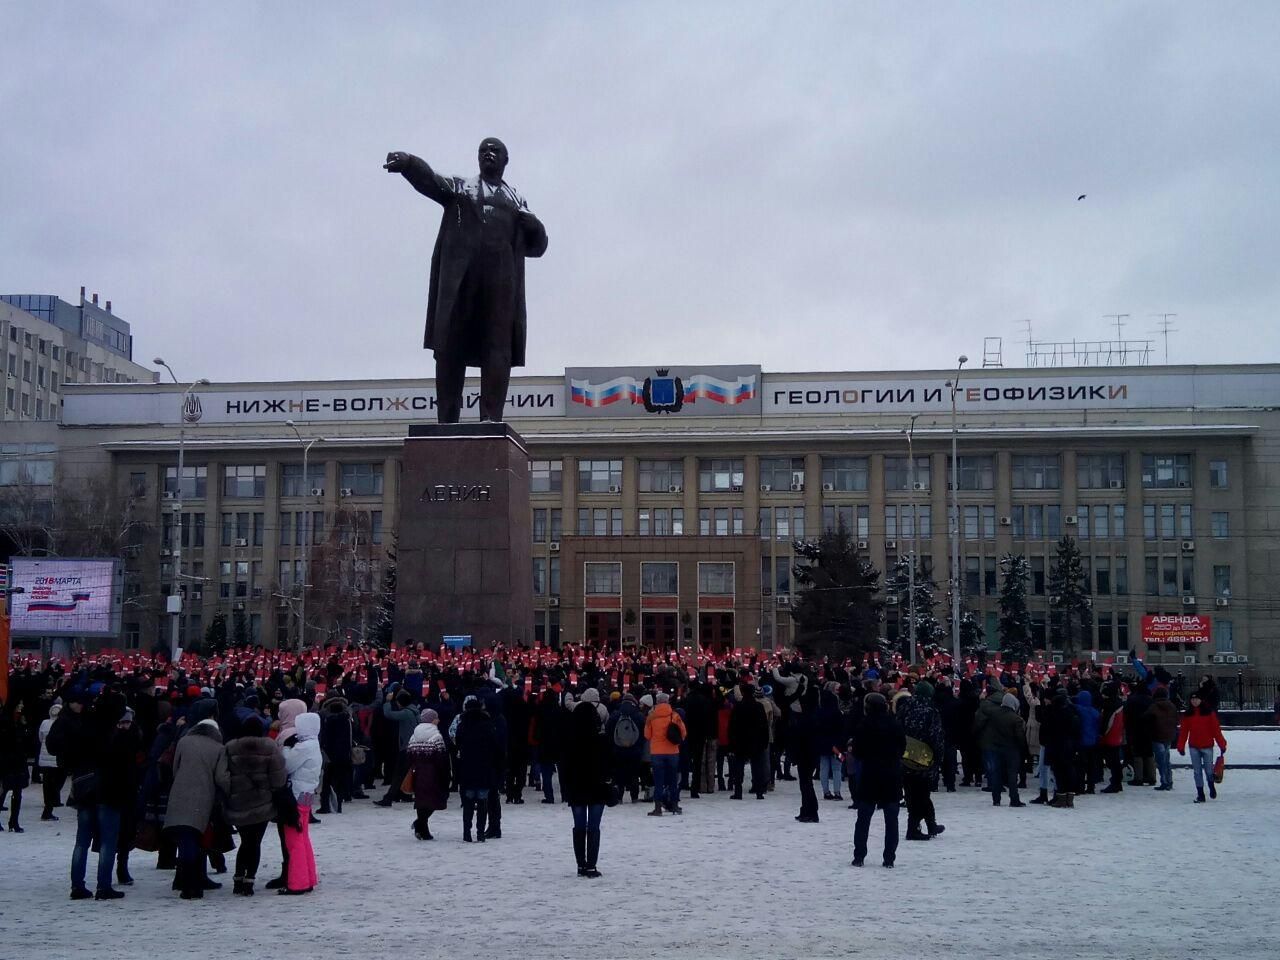 Сторонники А. Навального в Саратове